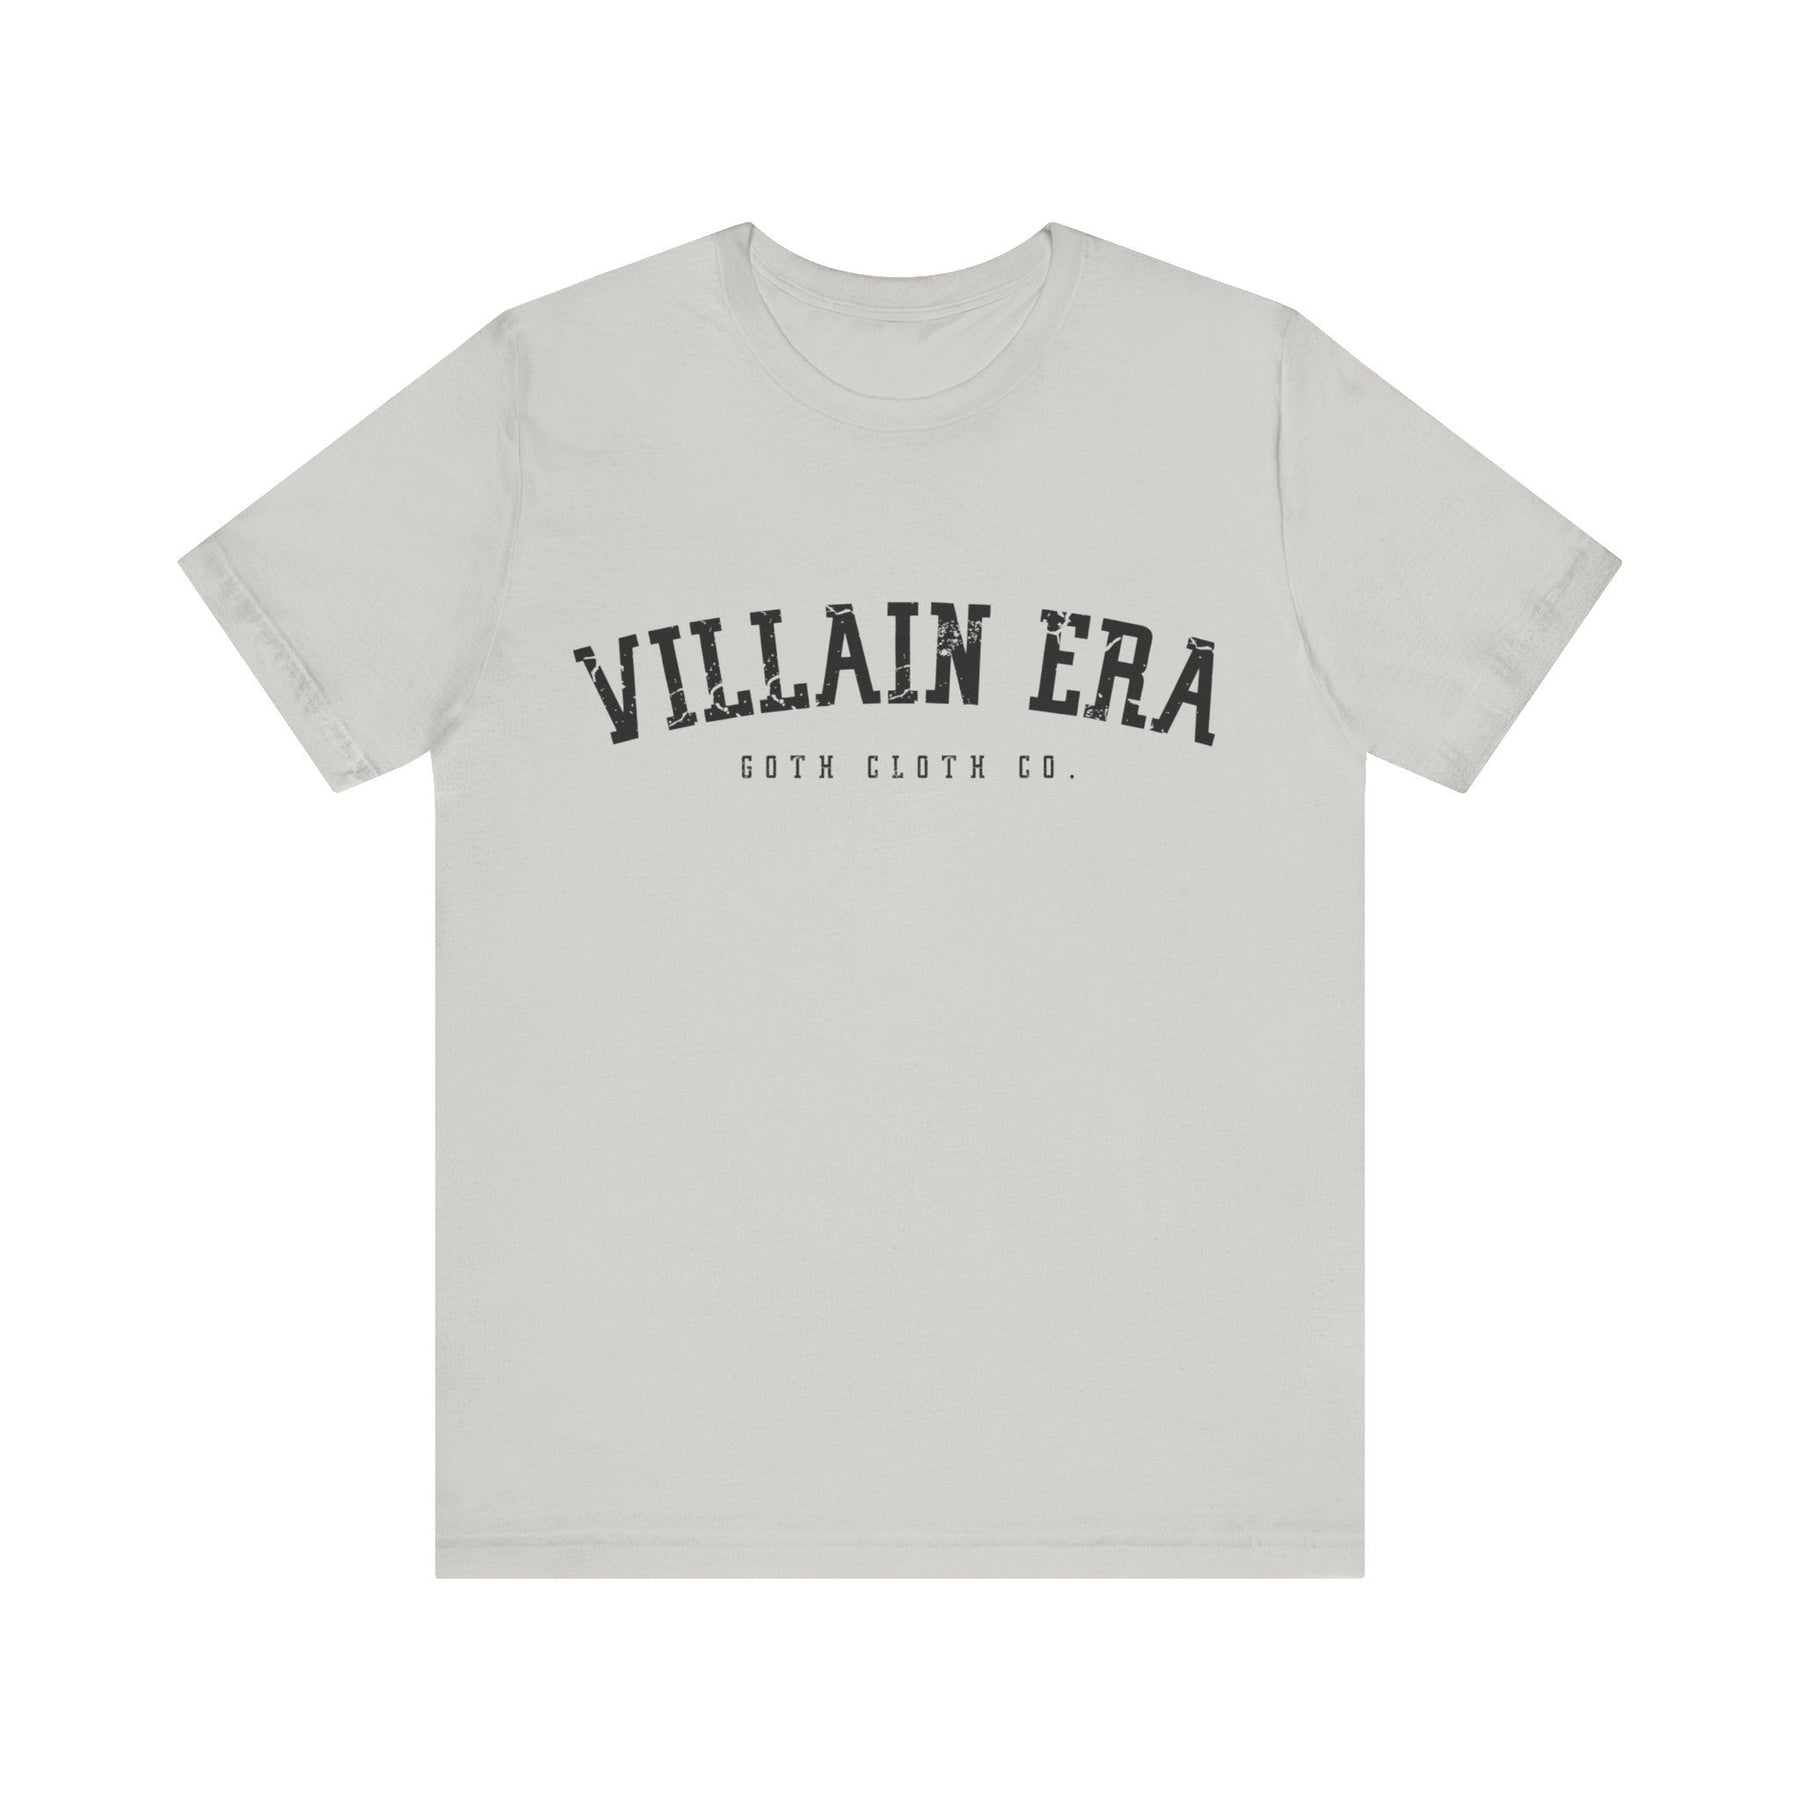 Villain Era Short Sleeve Tee - Goth Cloth Co.T - Shirt19826344680448994653